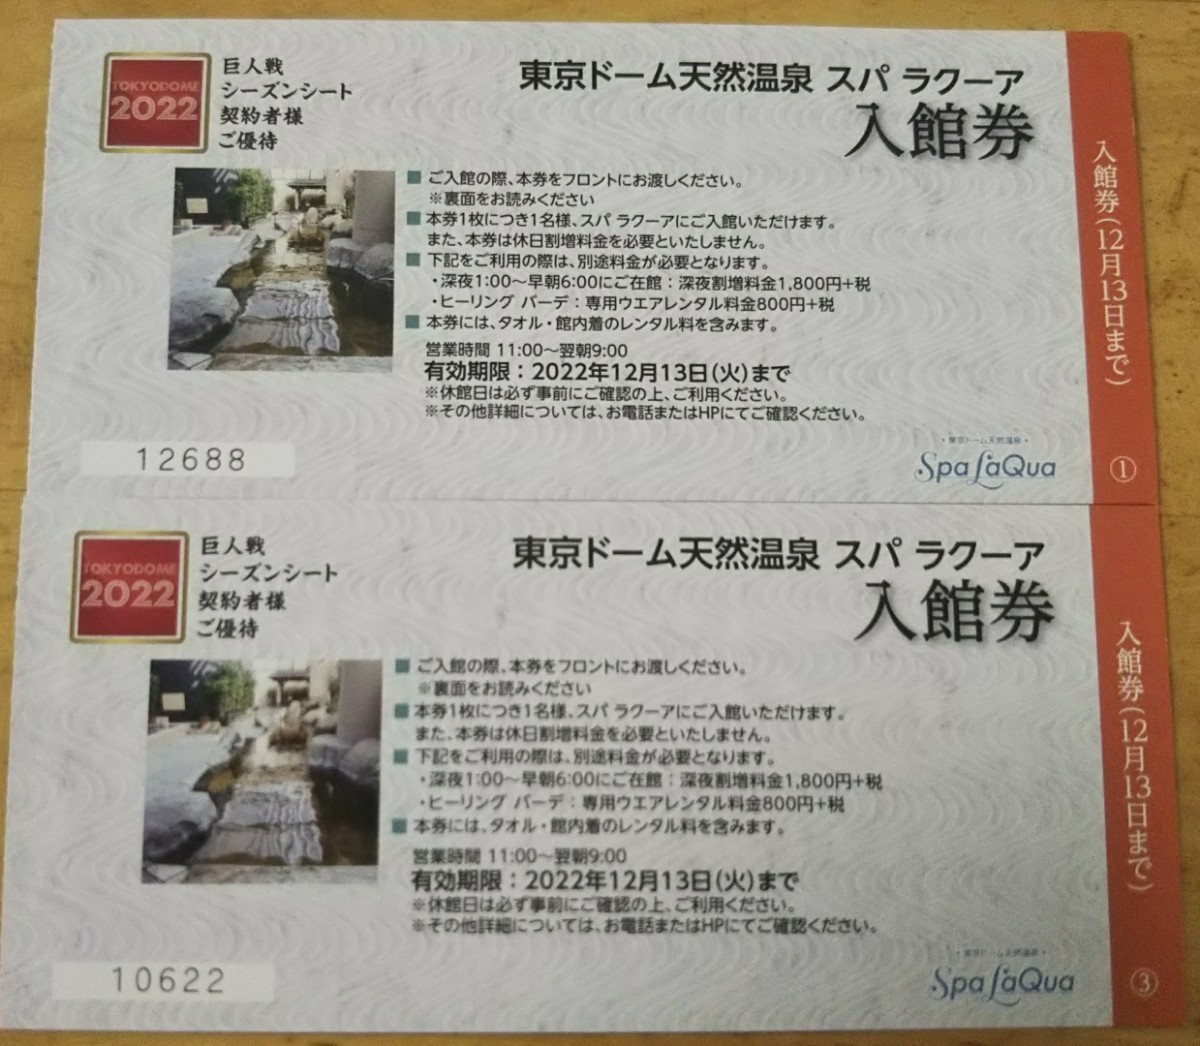 ６枚分 東京ドーム天然温泉 SpaLaQua(スパラクーア)入館券-